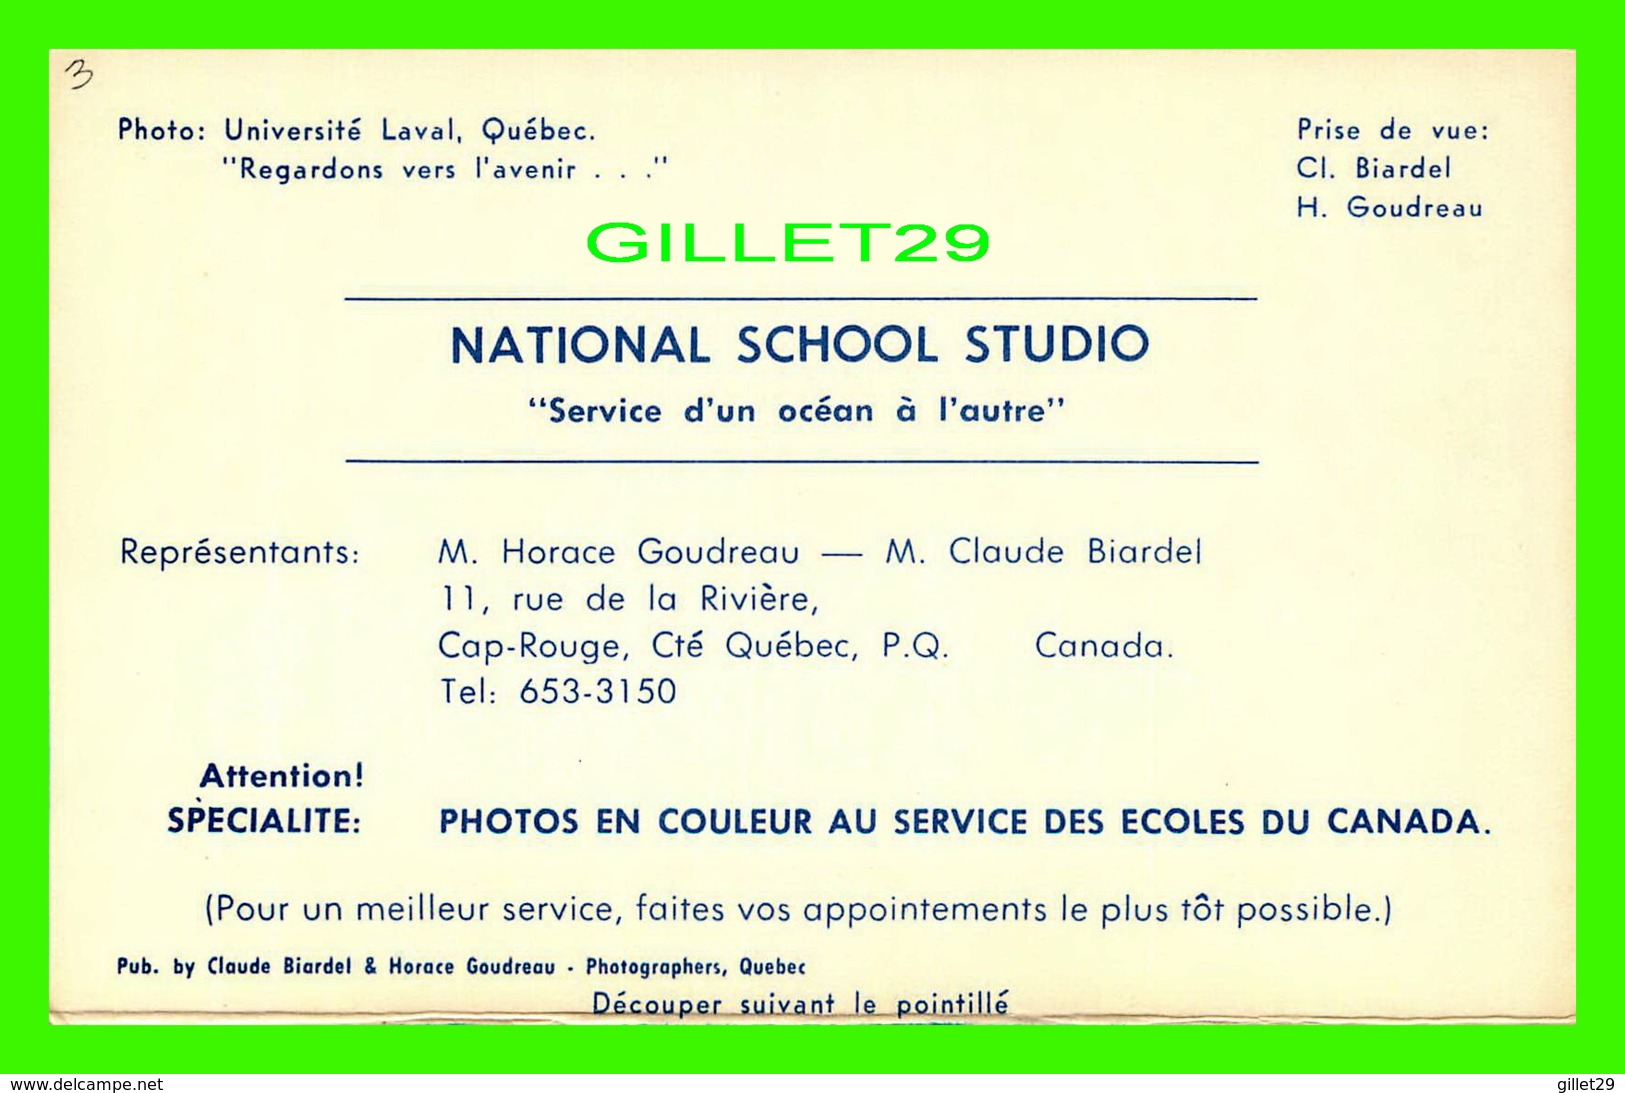 QUÉBEC - VUE DE L'UNIVERSITÉ LAVAL - NATIONAL SCHOOL STUDIO, HORACE GOUDREAU & CLAUDE BIARDEL - - Québec - La Cité